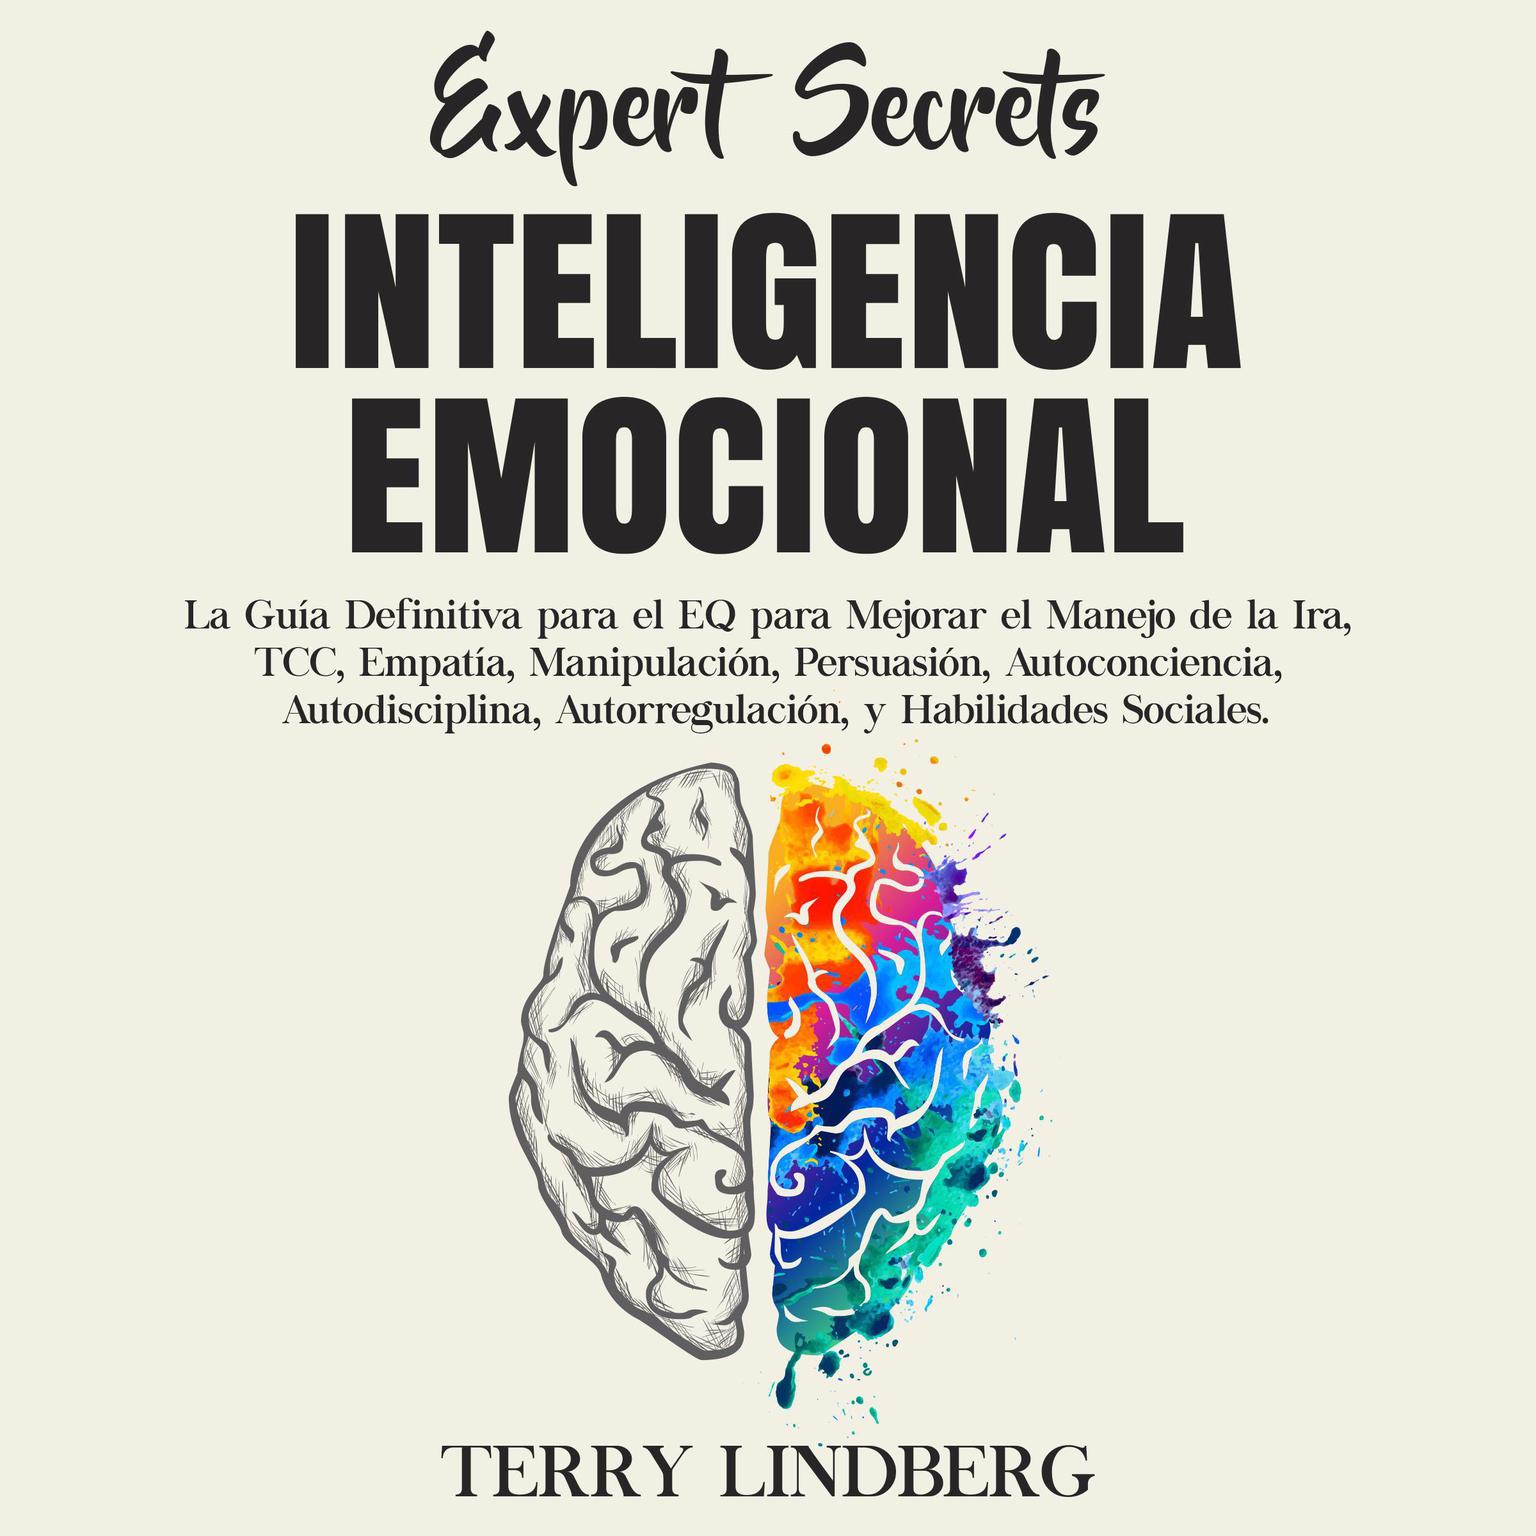 Secretos de Expertos - Inteligencia Emocional: La Guía Definitiva para el EQ para Mejorar el Manejo de la Ira, TCC, Empatía, Manipulación, Persuasión, Autoconciencia, Autodisciplina, Autorregulación, y Habilidades Sociales. Audiobook, by Terry Lindberg